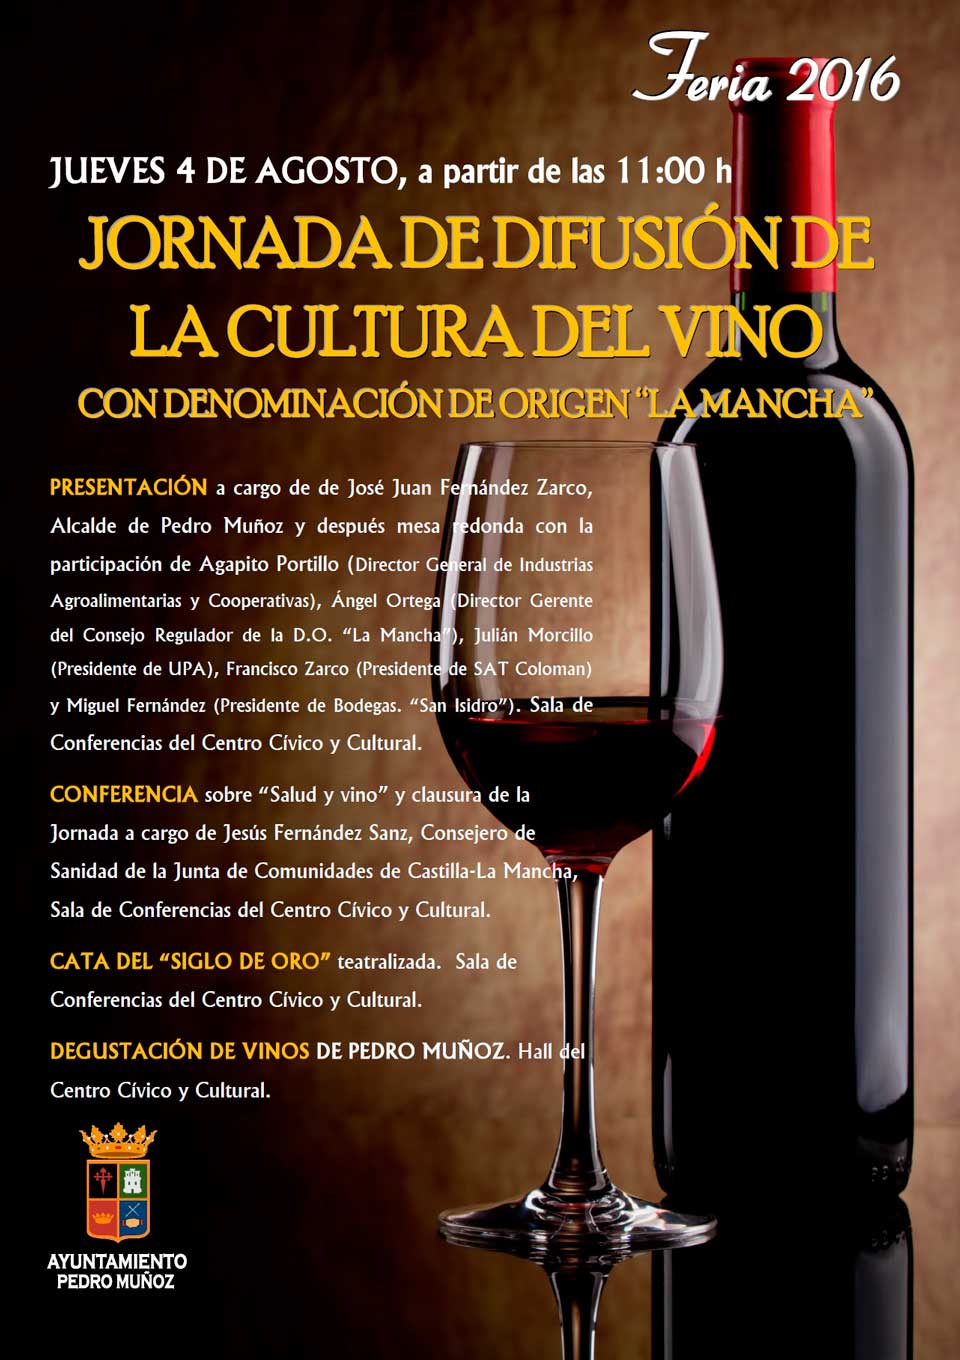 Pedro Muñoz volverá a apostar en su feria por la promoción de nuestros caldos con una jornada dedicada al vino con D.O. "La Mancha